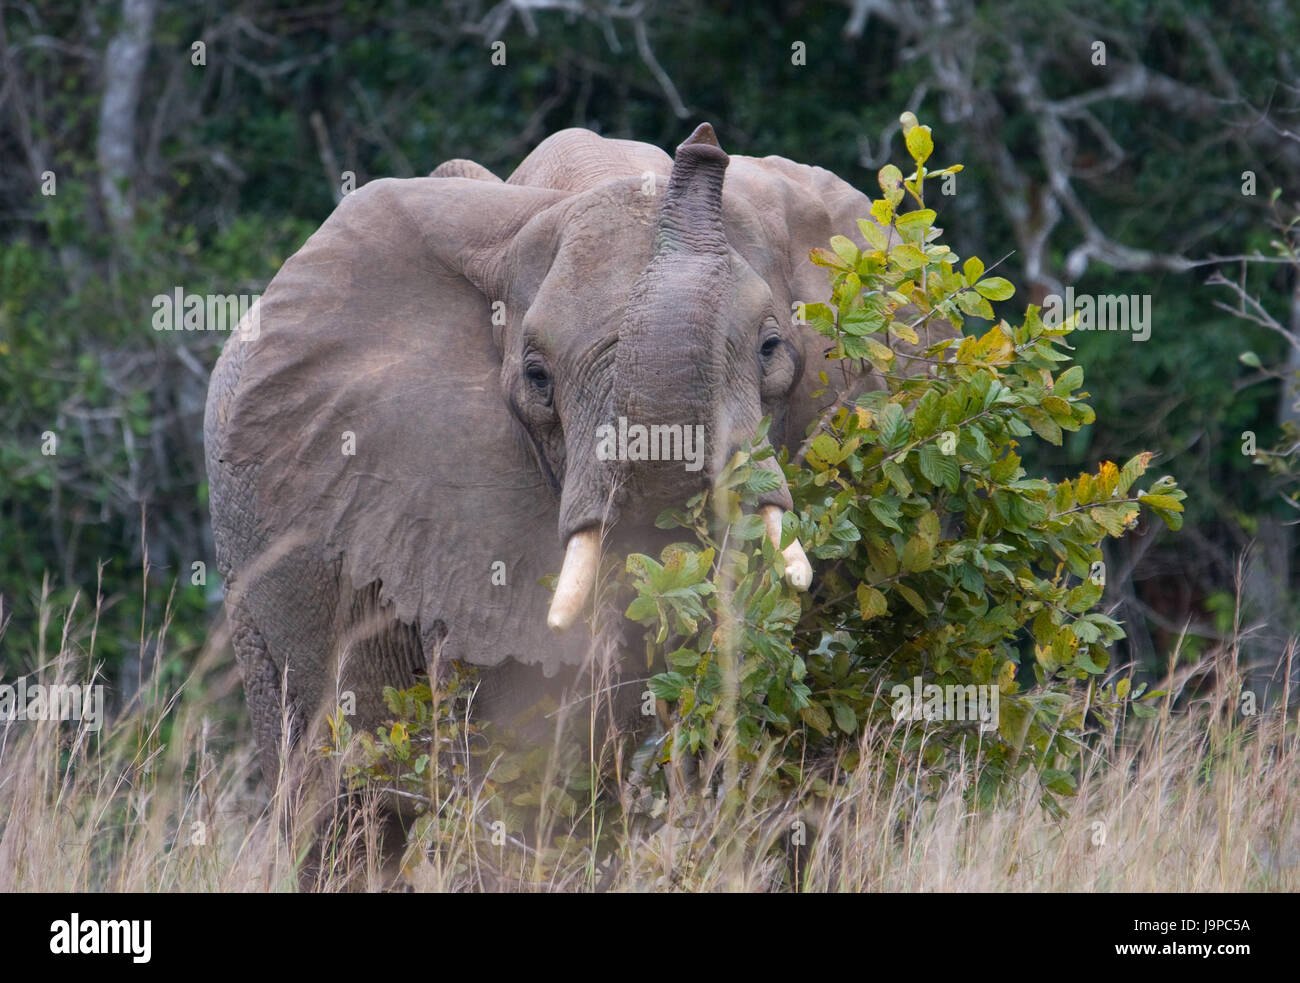 africa, elephant, kenya, wildlife, safari, holiday, vacation, holidays, Stock Photo